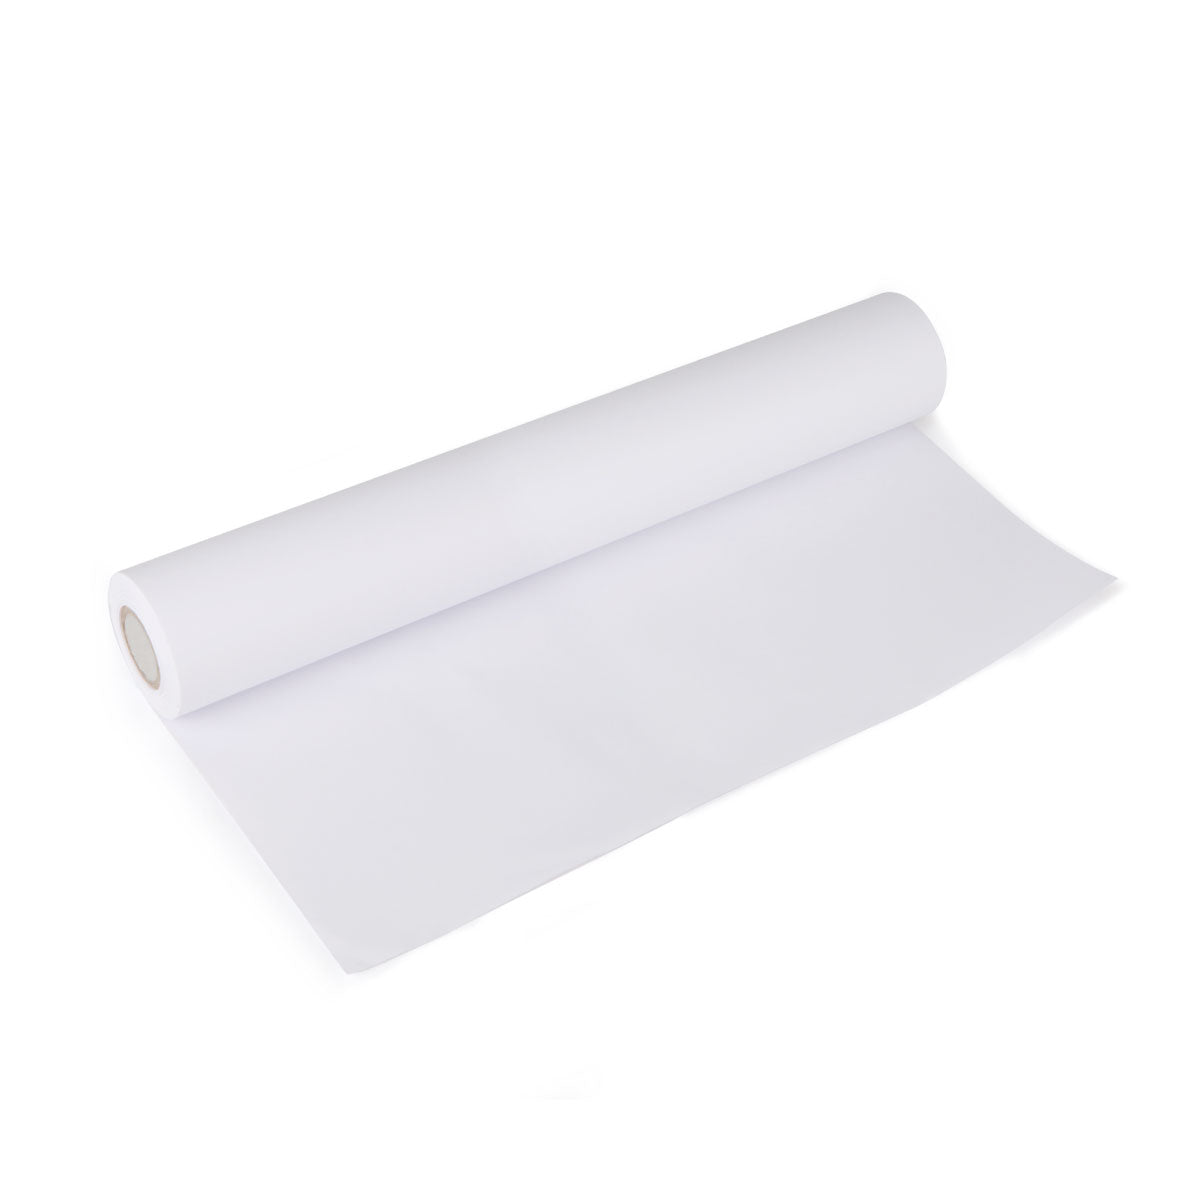 Hape Art Paper Roll Easel Refill